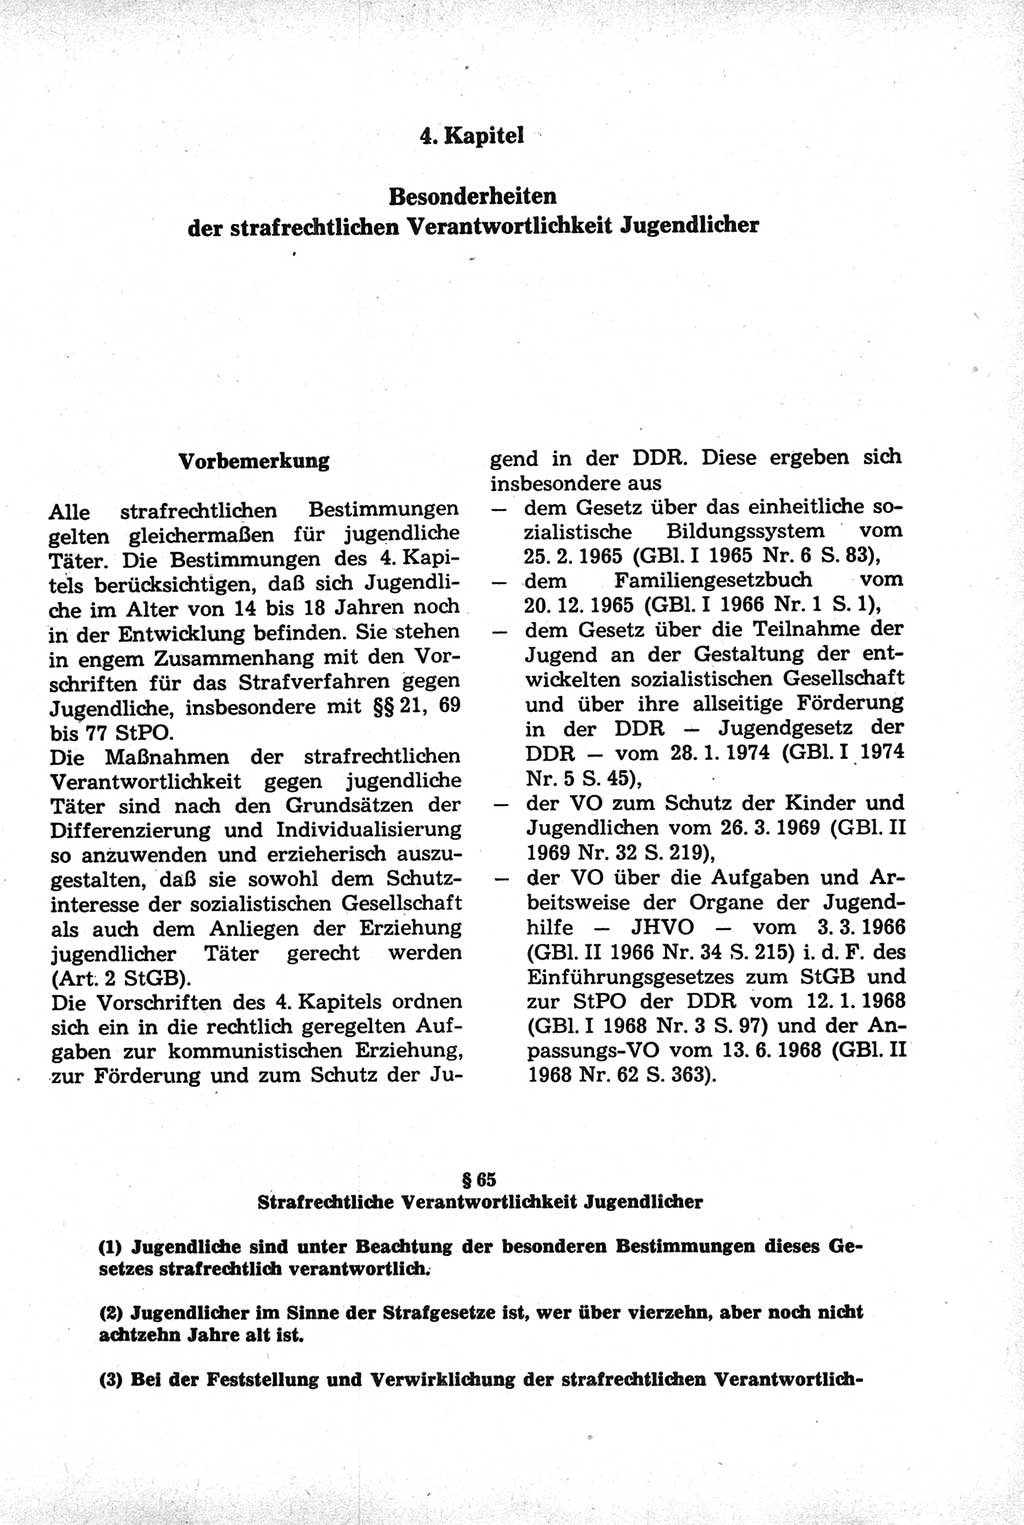 Strafrecht der Deutschen Demokratischen Republik (DDR), Kommentar zum Strafgesetzbuch (StGB) 1981, Seite 231 (Strafr. DDR Komm. StGB 1981, S. 231)